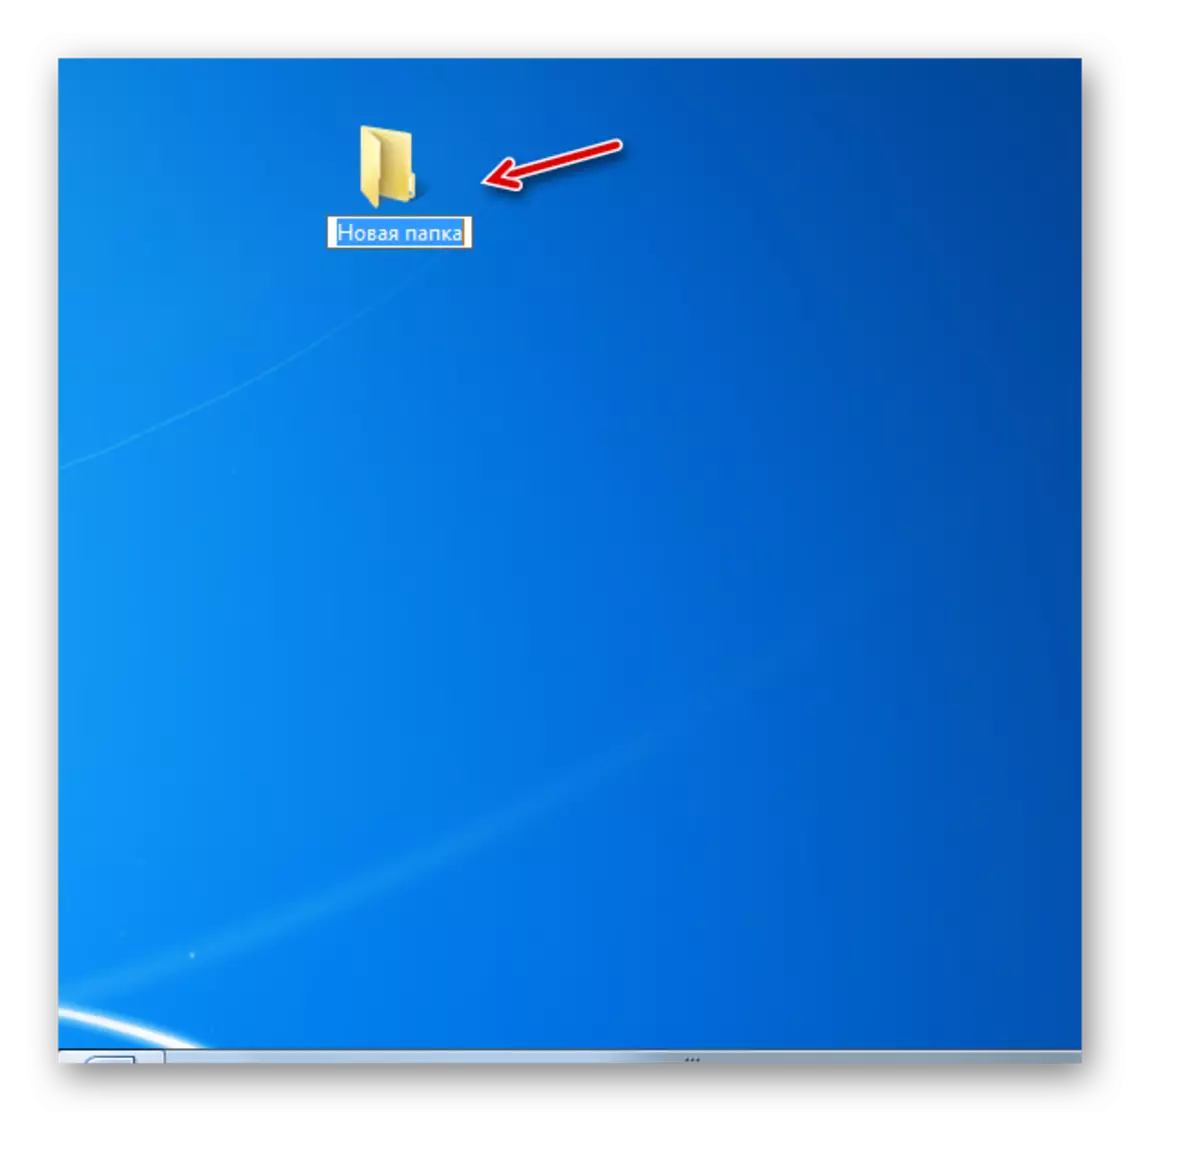 Windows 7-da ish stolida papkani yaratdi